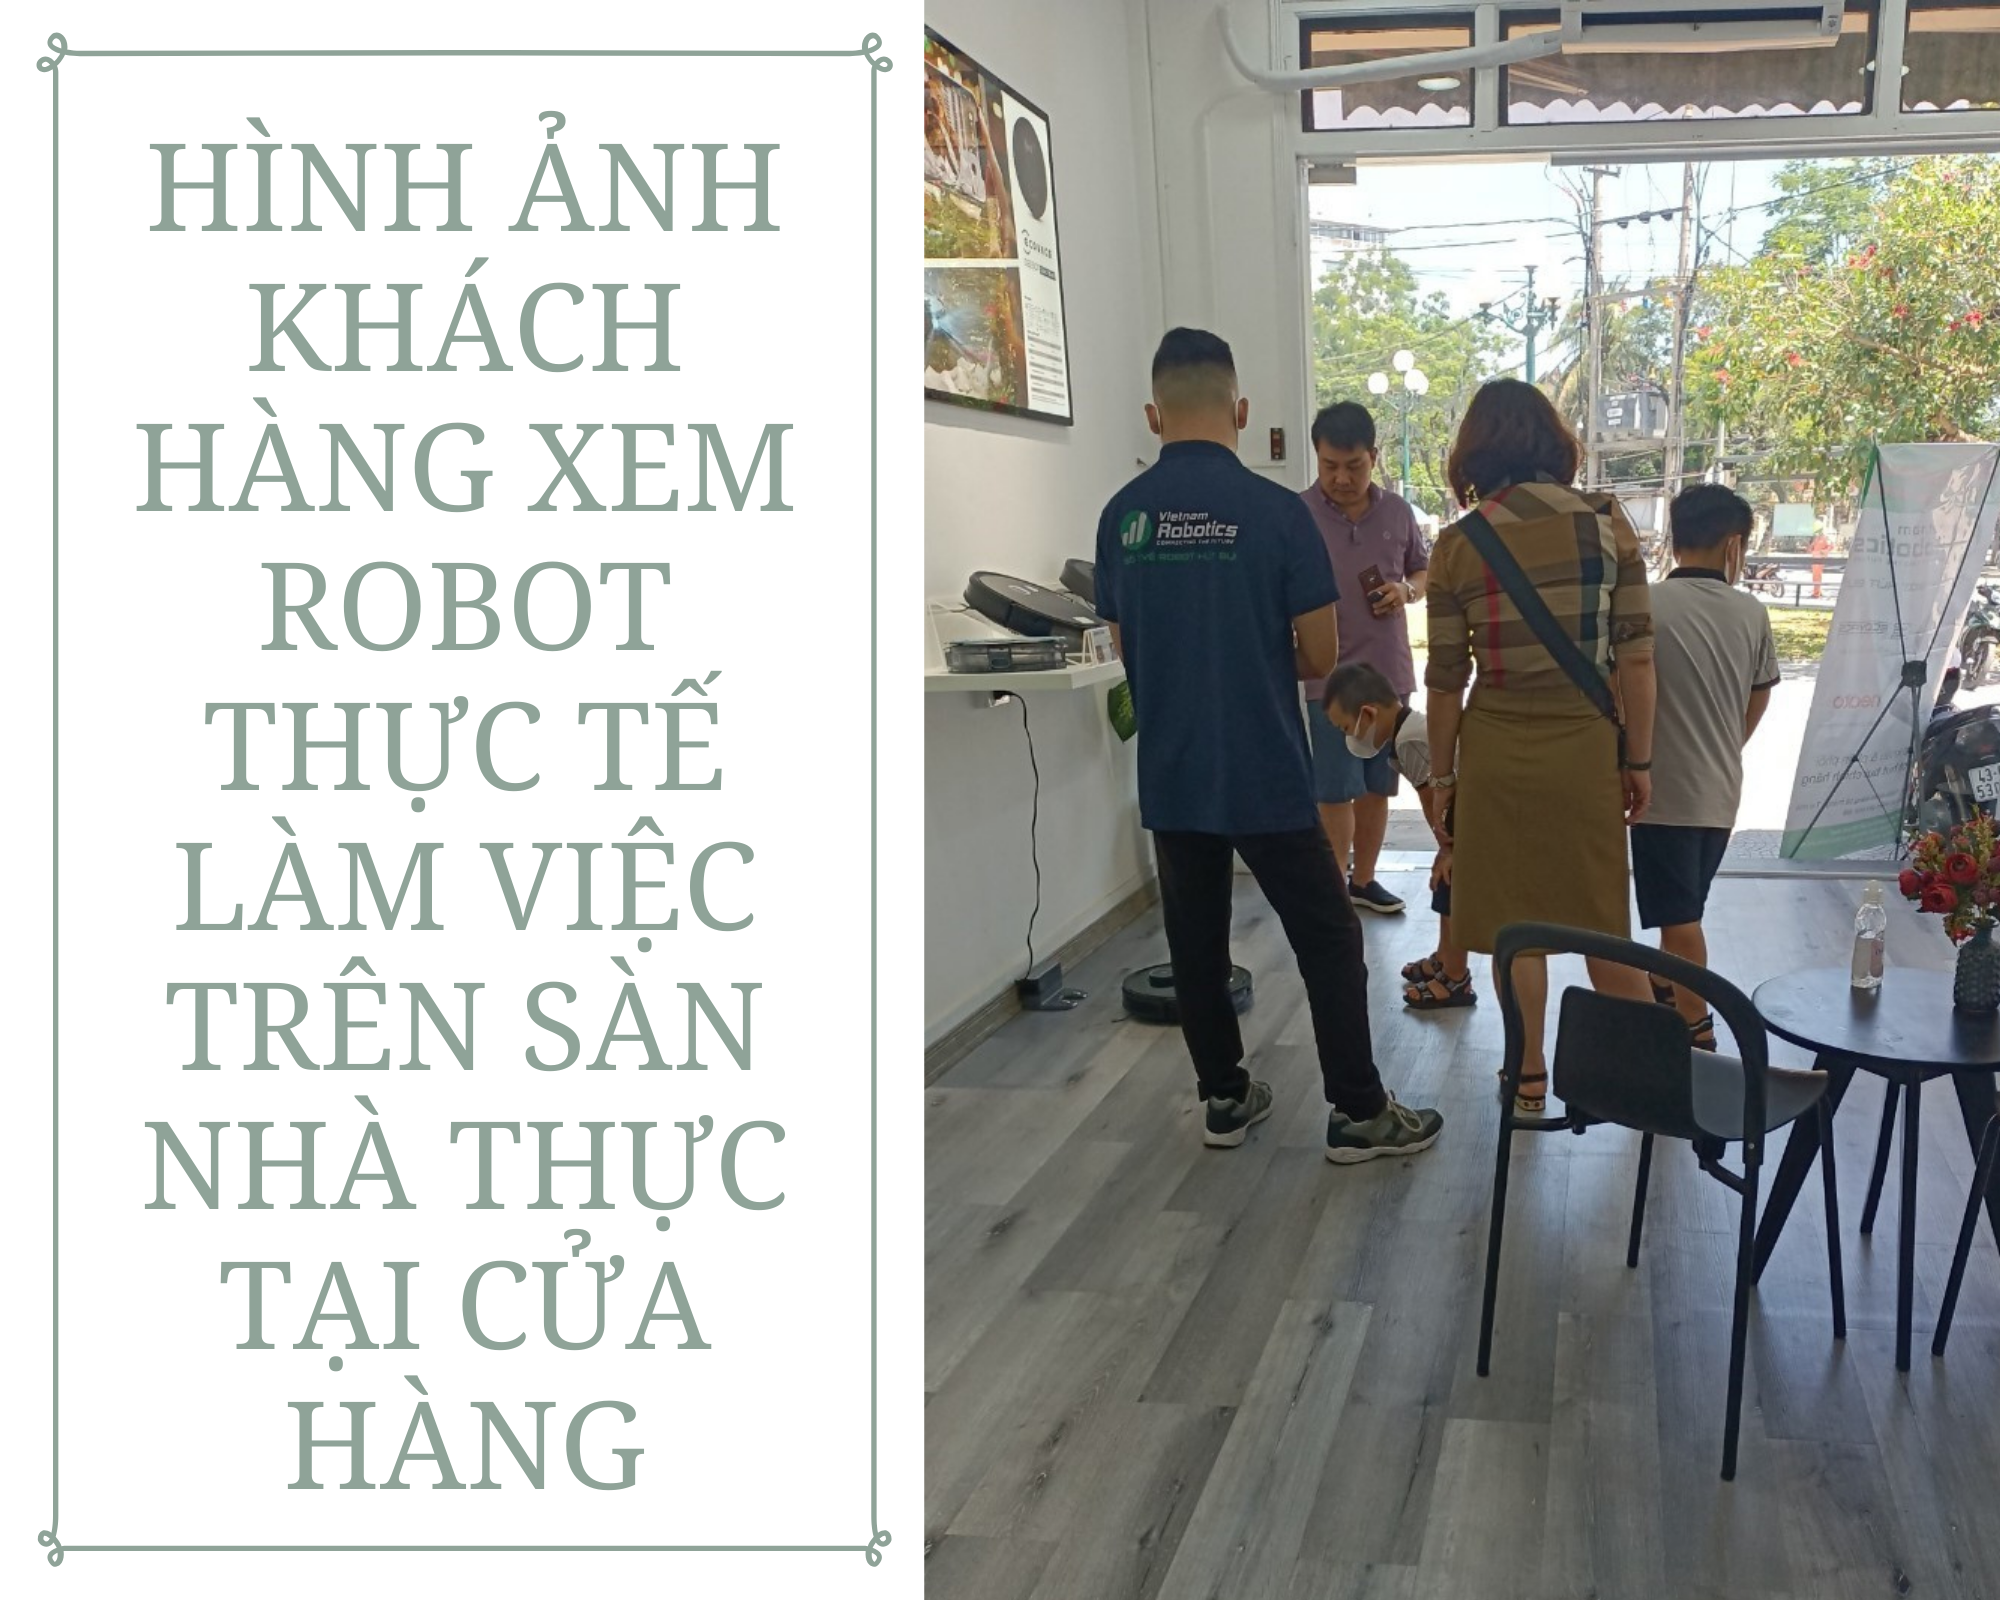 Hình ảnh khách hàng xem robot thực tế làm việc trên sàn nhà thực tại cửa hàng